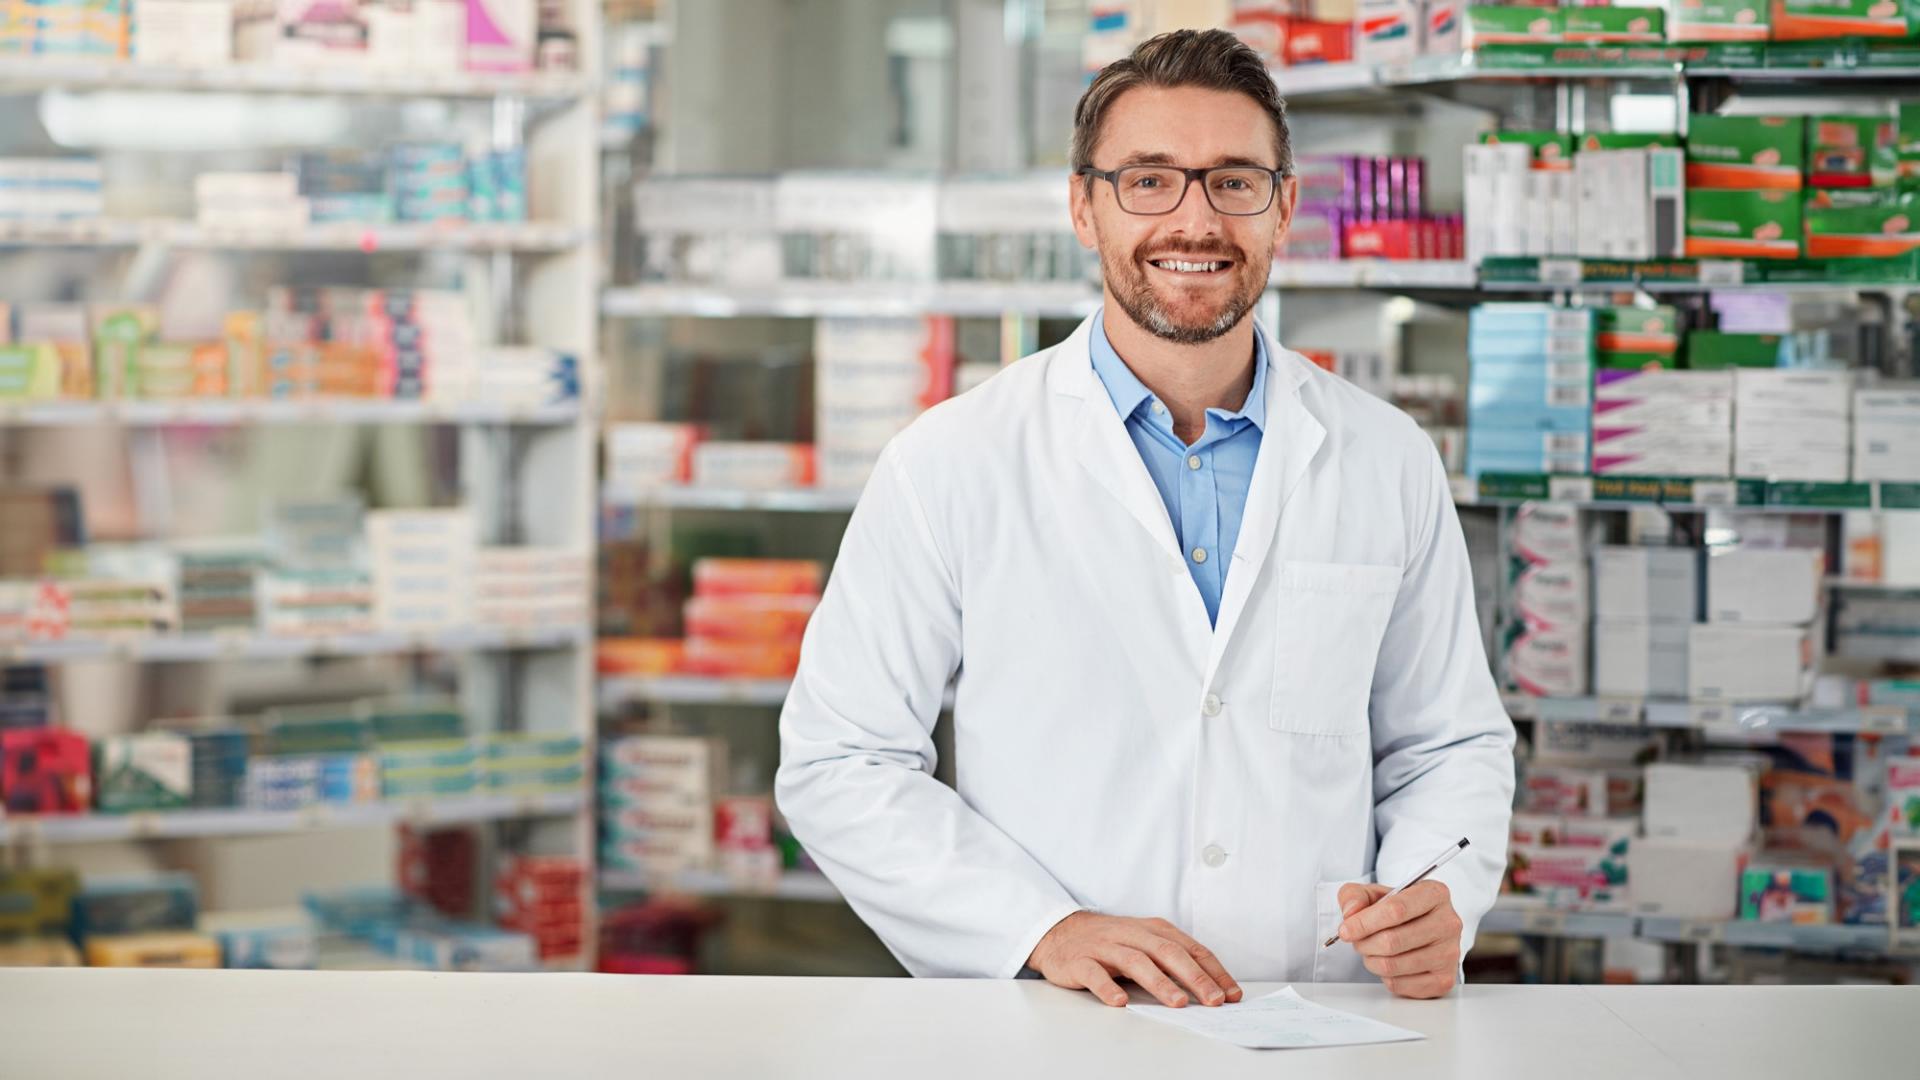 Ein Mann mit weißem Kittel steht vor einem Regal mit Medikamenten